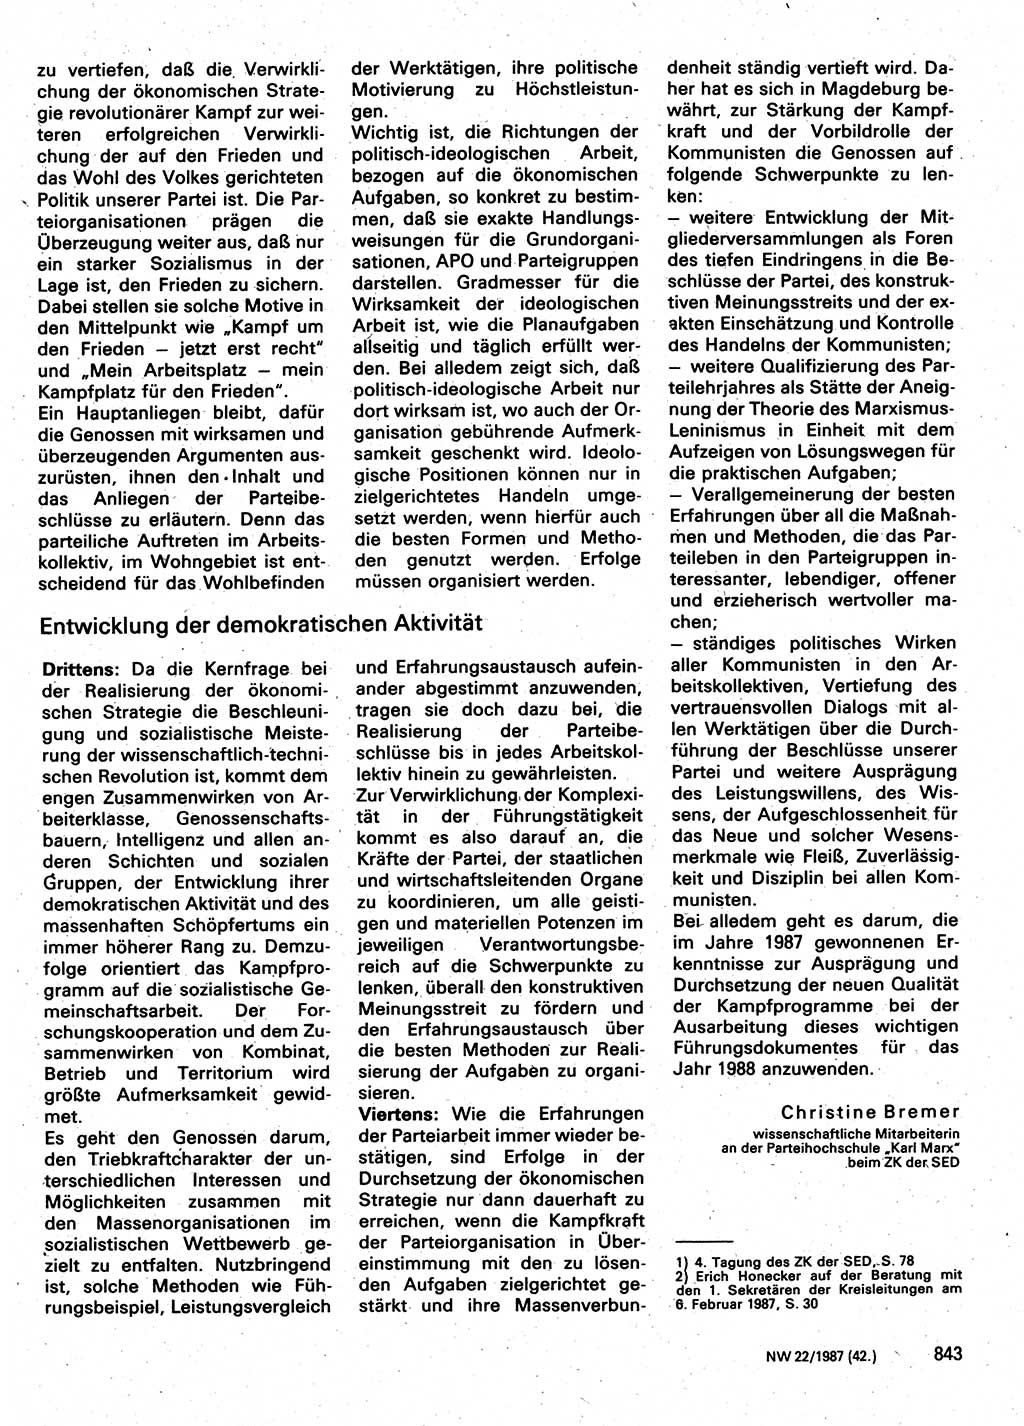 Neuer Weg (NW), Organ des Zentralkomitees (ZK) der SED (Sozialistische Einheitspartei Deutschlands) für Fragen des Parteilebens, 42. Jahrgang [Deutsche Demokratische Republik (DDR)] 1987, Seite 843 (NW ZK SED DDR 1987, S. 843)